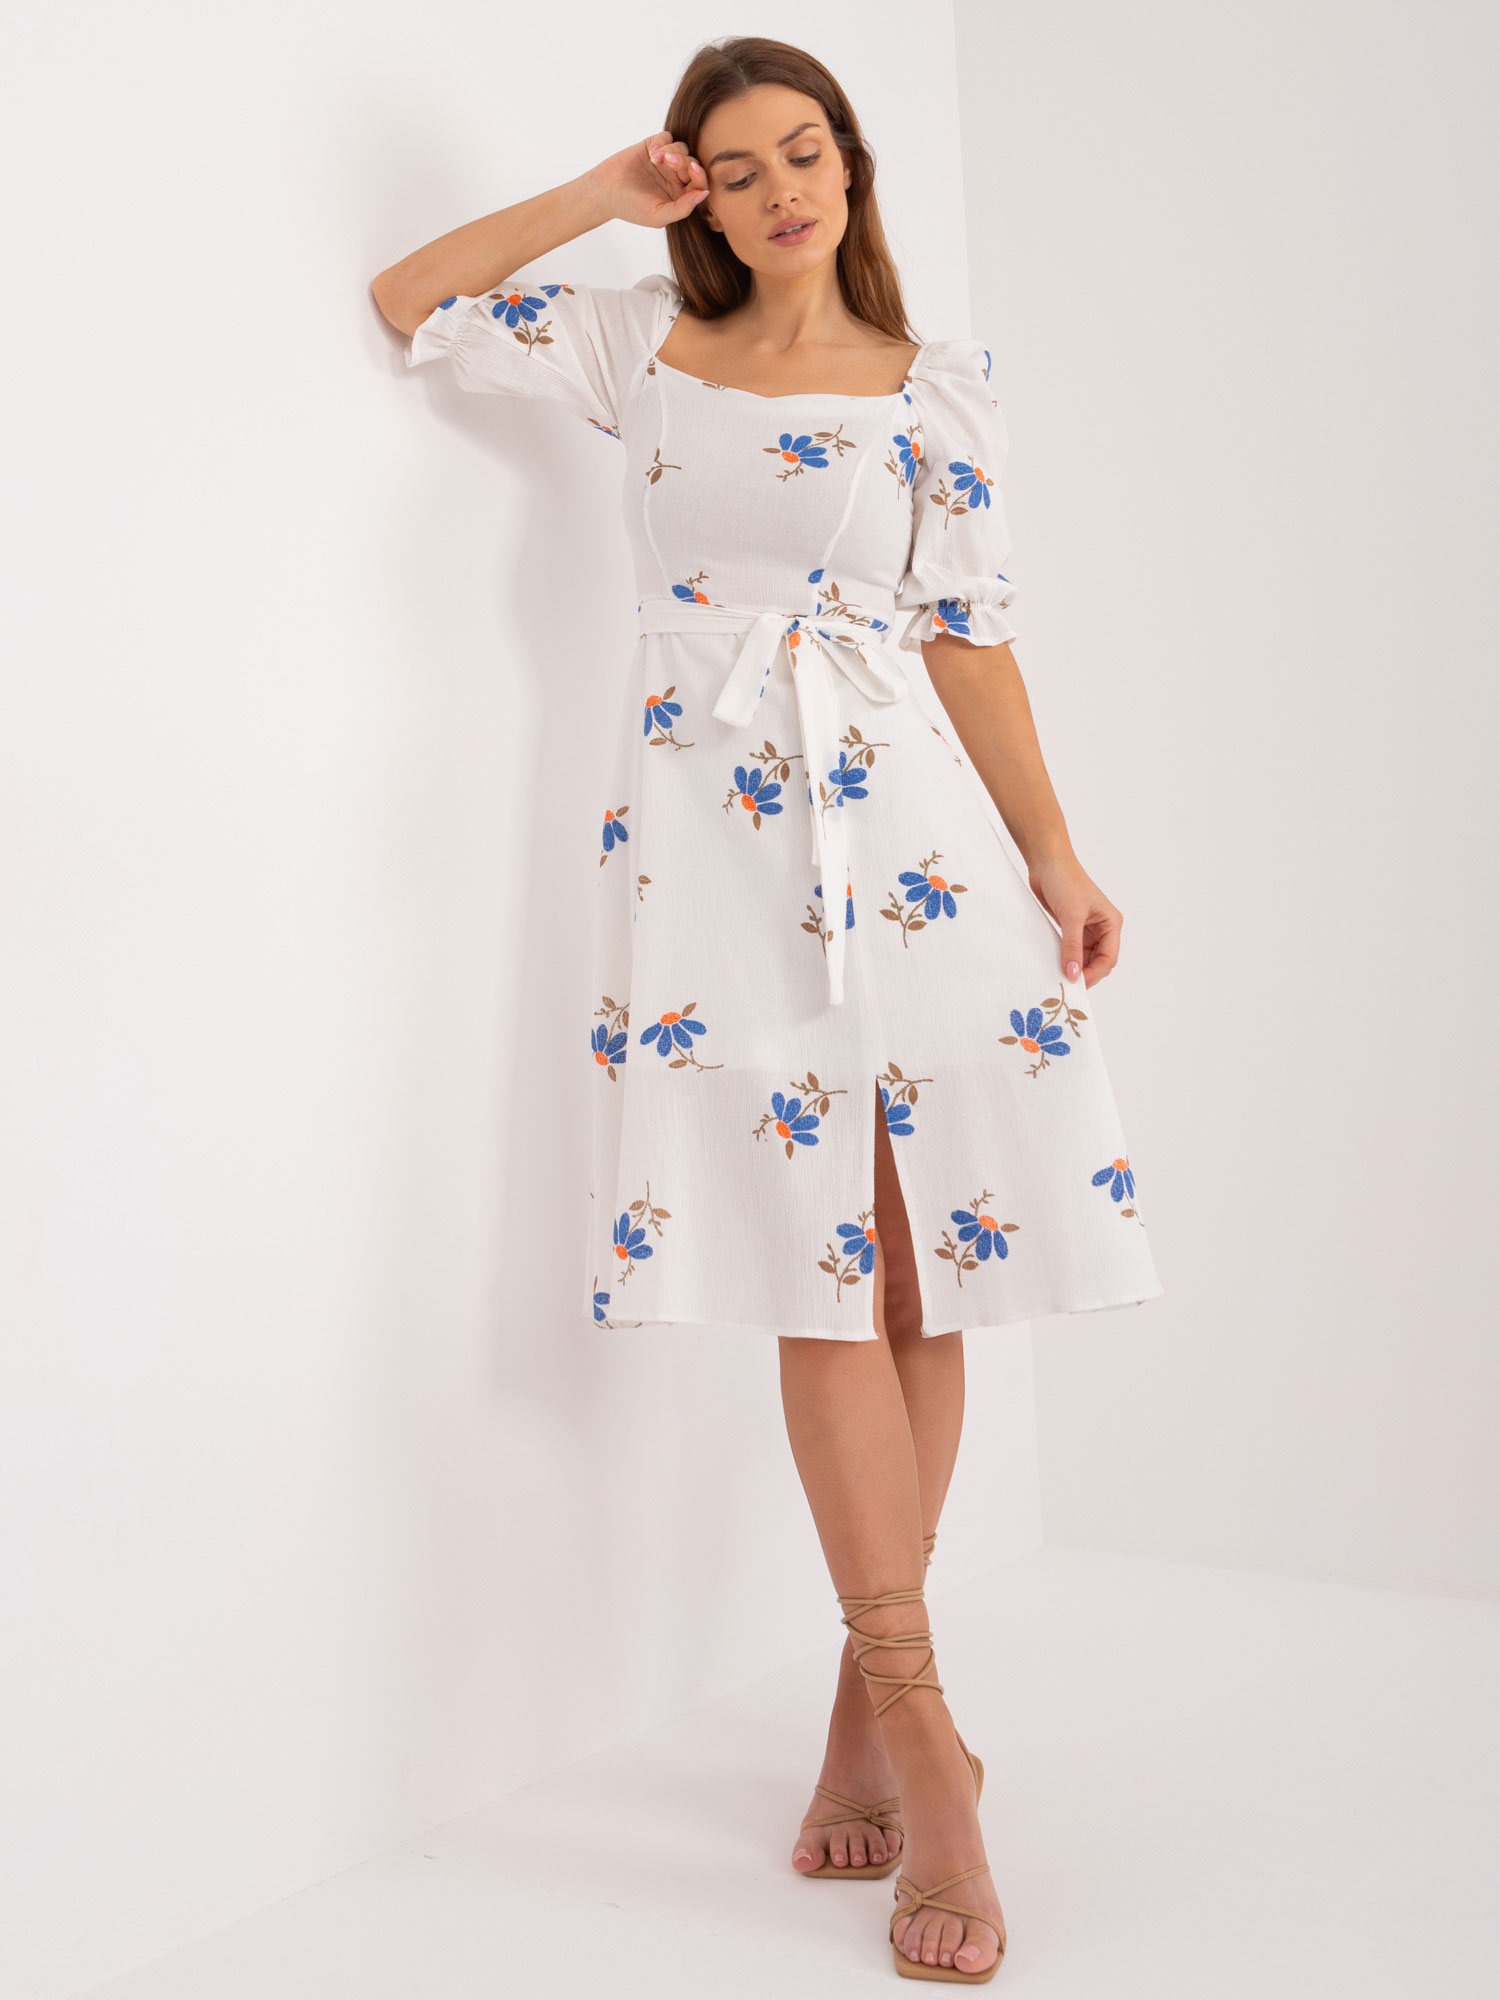 Bílé šaty s modrými květinami -LK-SK-508964-3.95-white-blue Velikost: 42